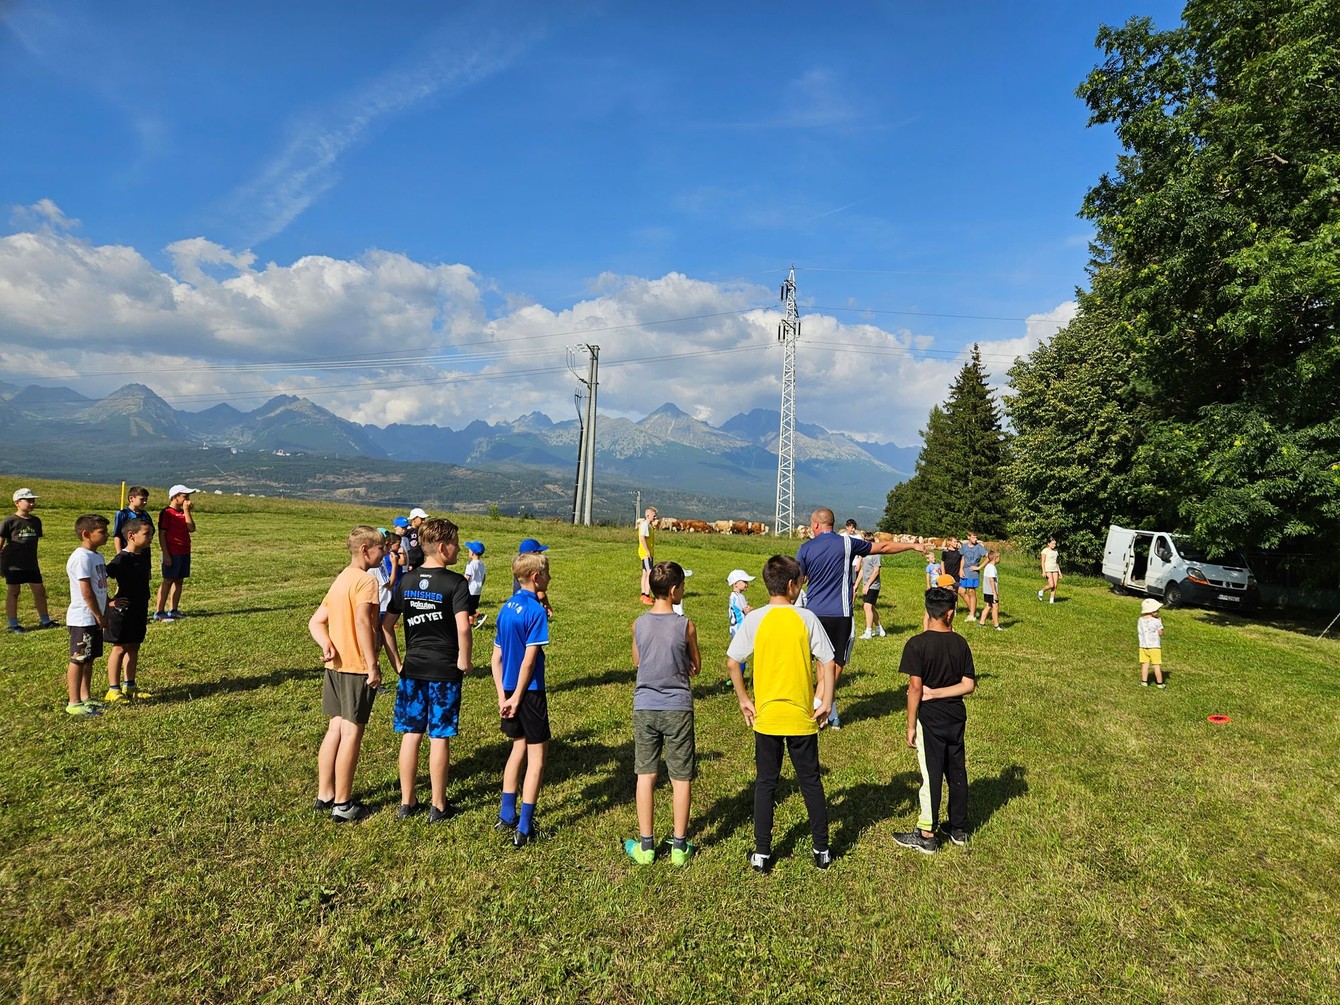 Komentár Martina Pohloda k tejto fotografii: „Všade sa hrá futbal.“ Deti, tatranské kopce a, všimnite si, vzadu kravky...